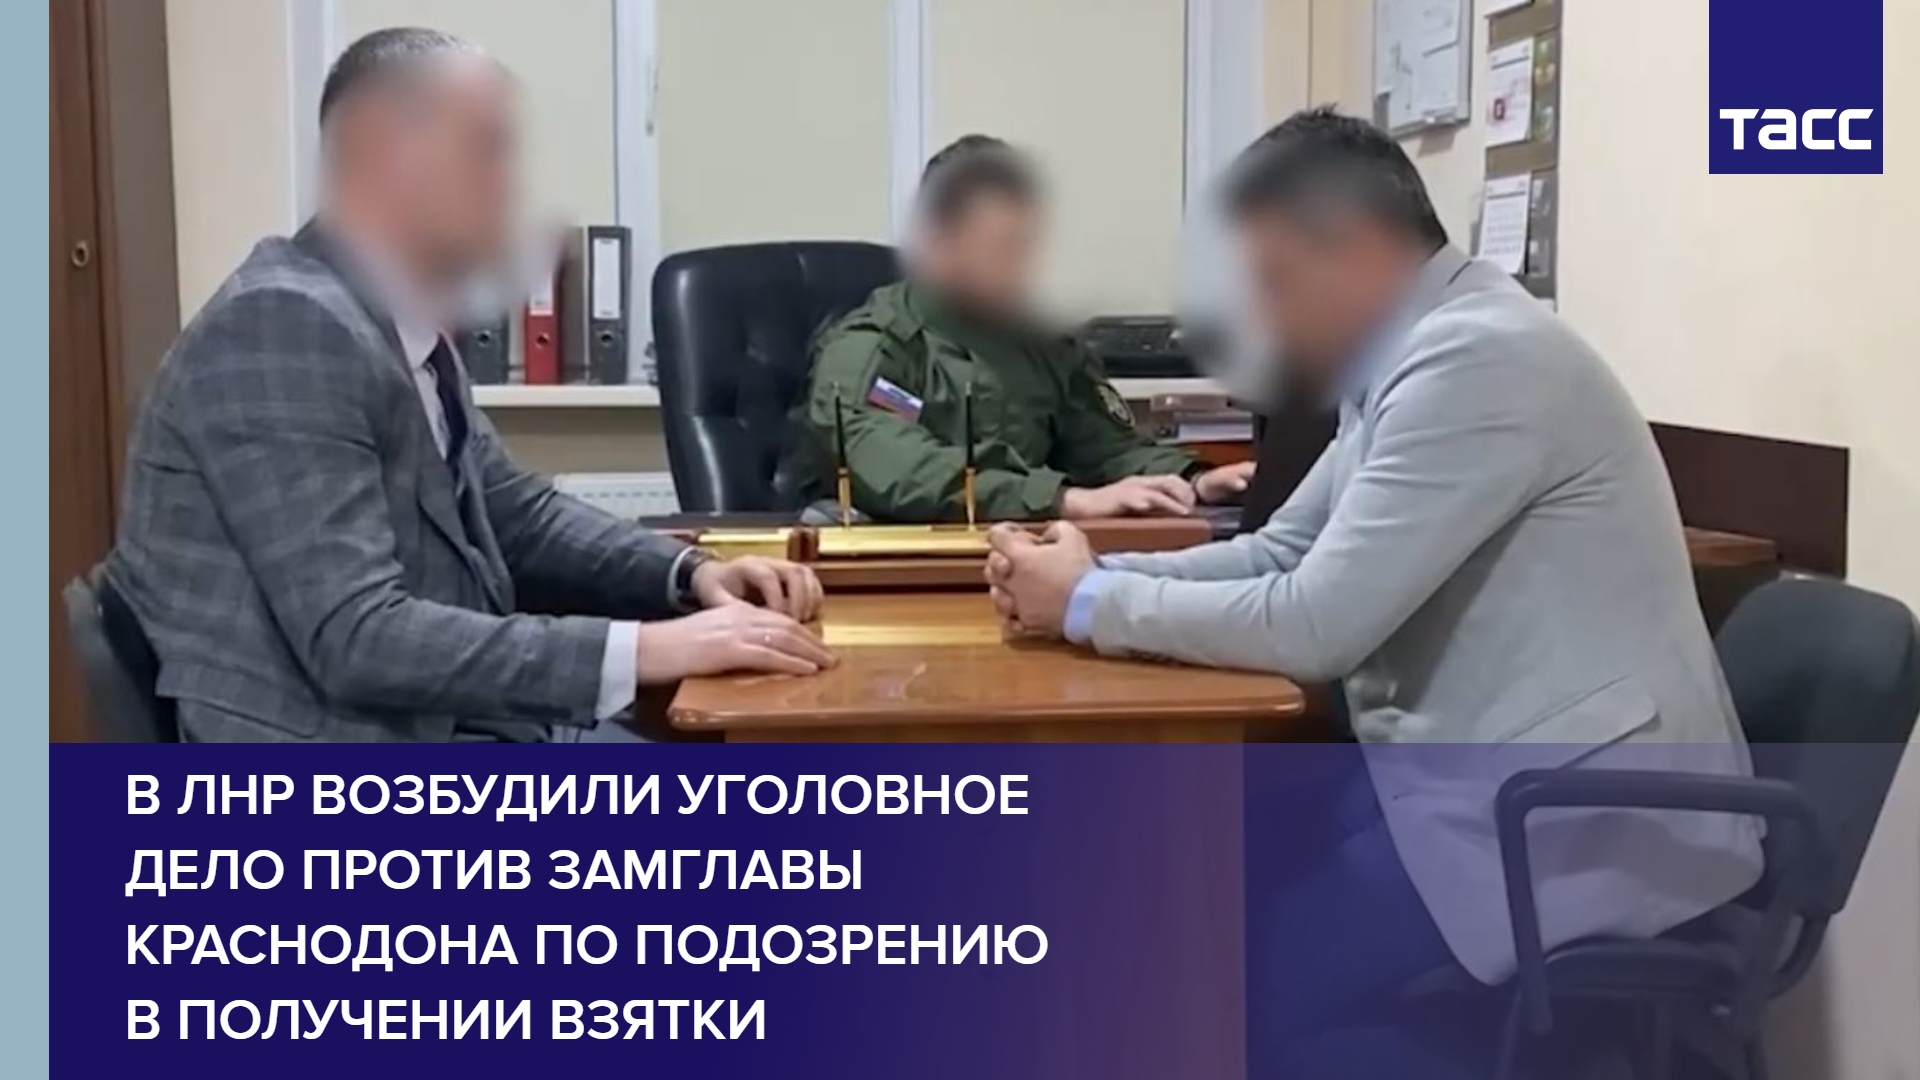 В ЛНР возбудили уголовное дело против замглавы Краснодона по подозрению в получении взятки